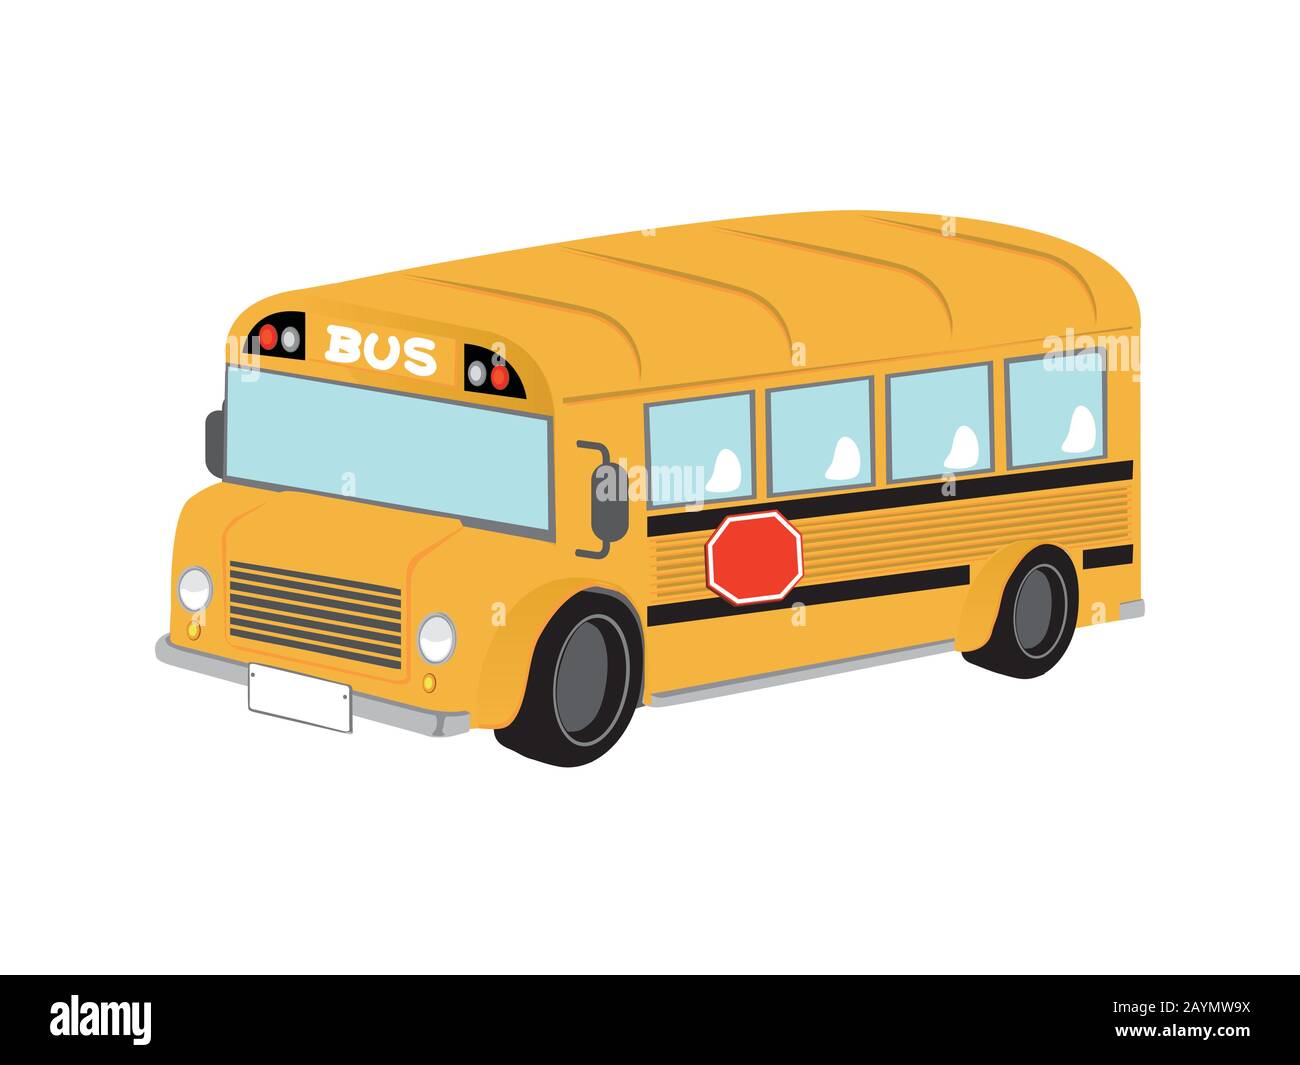 Illustrazione del bus giallo del cartone animato (autobus della scuola  Immagine e Vettoriale - Alamy